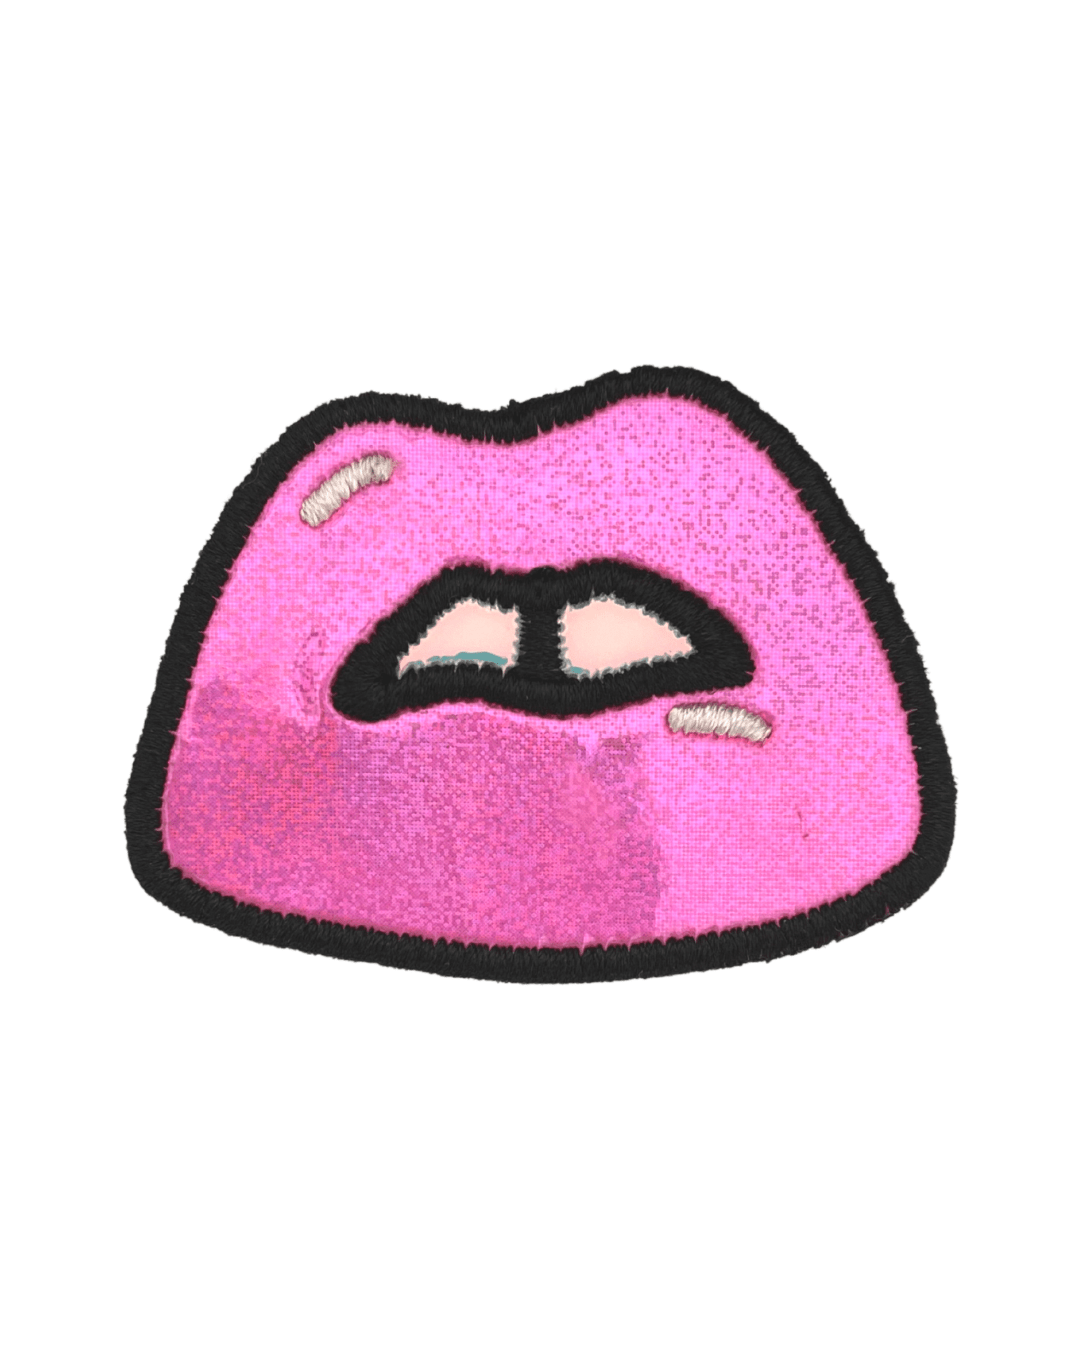 Pink Glitter Lips Sticker Patch - American Deadstock